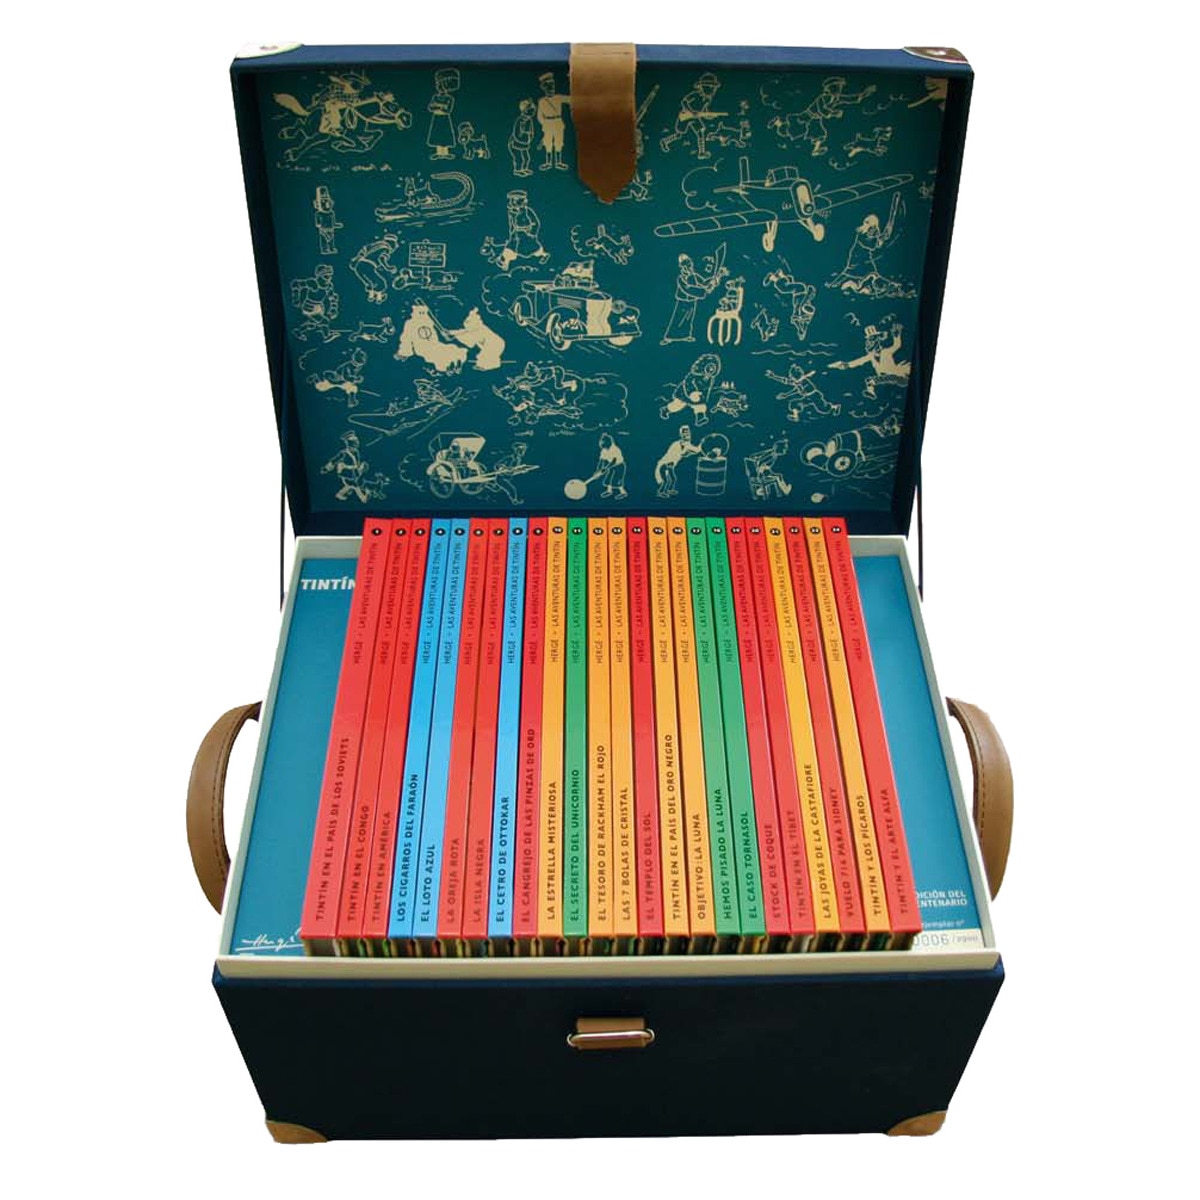 Colección completa de las aventuras de Tintín en cofre